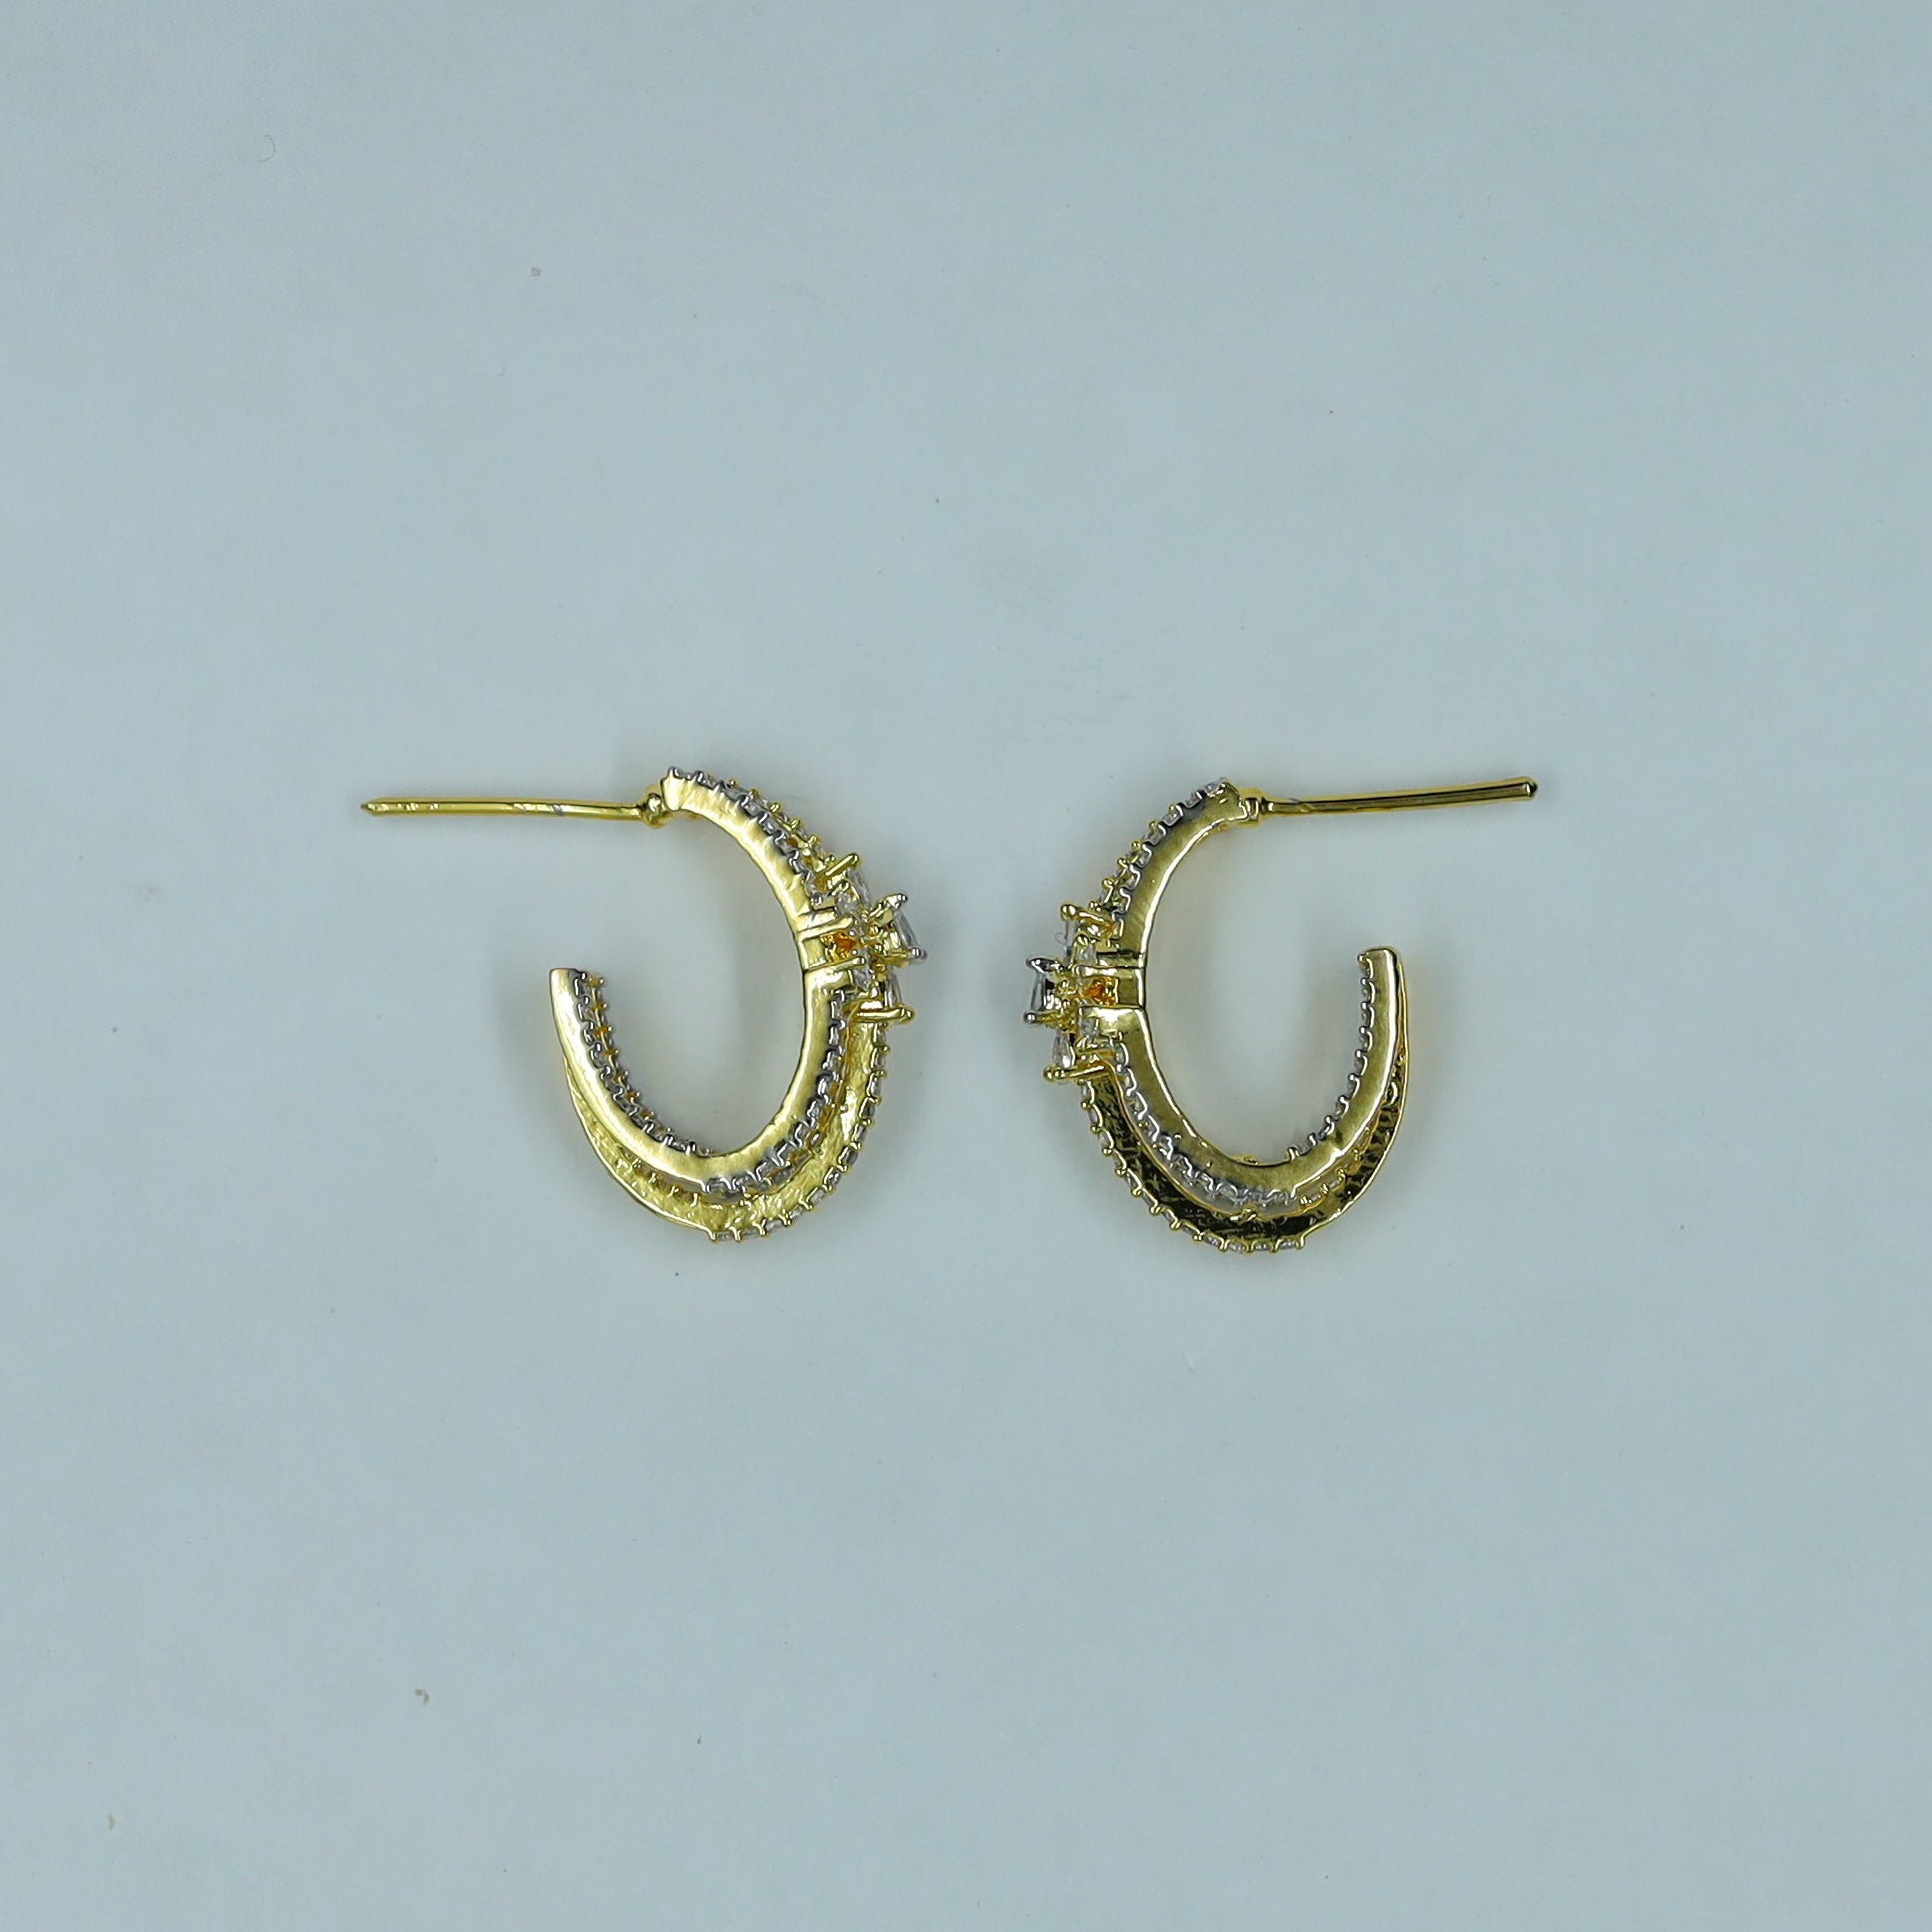 Bali Zircon/AD Earring 11934-69